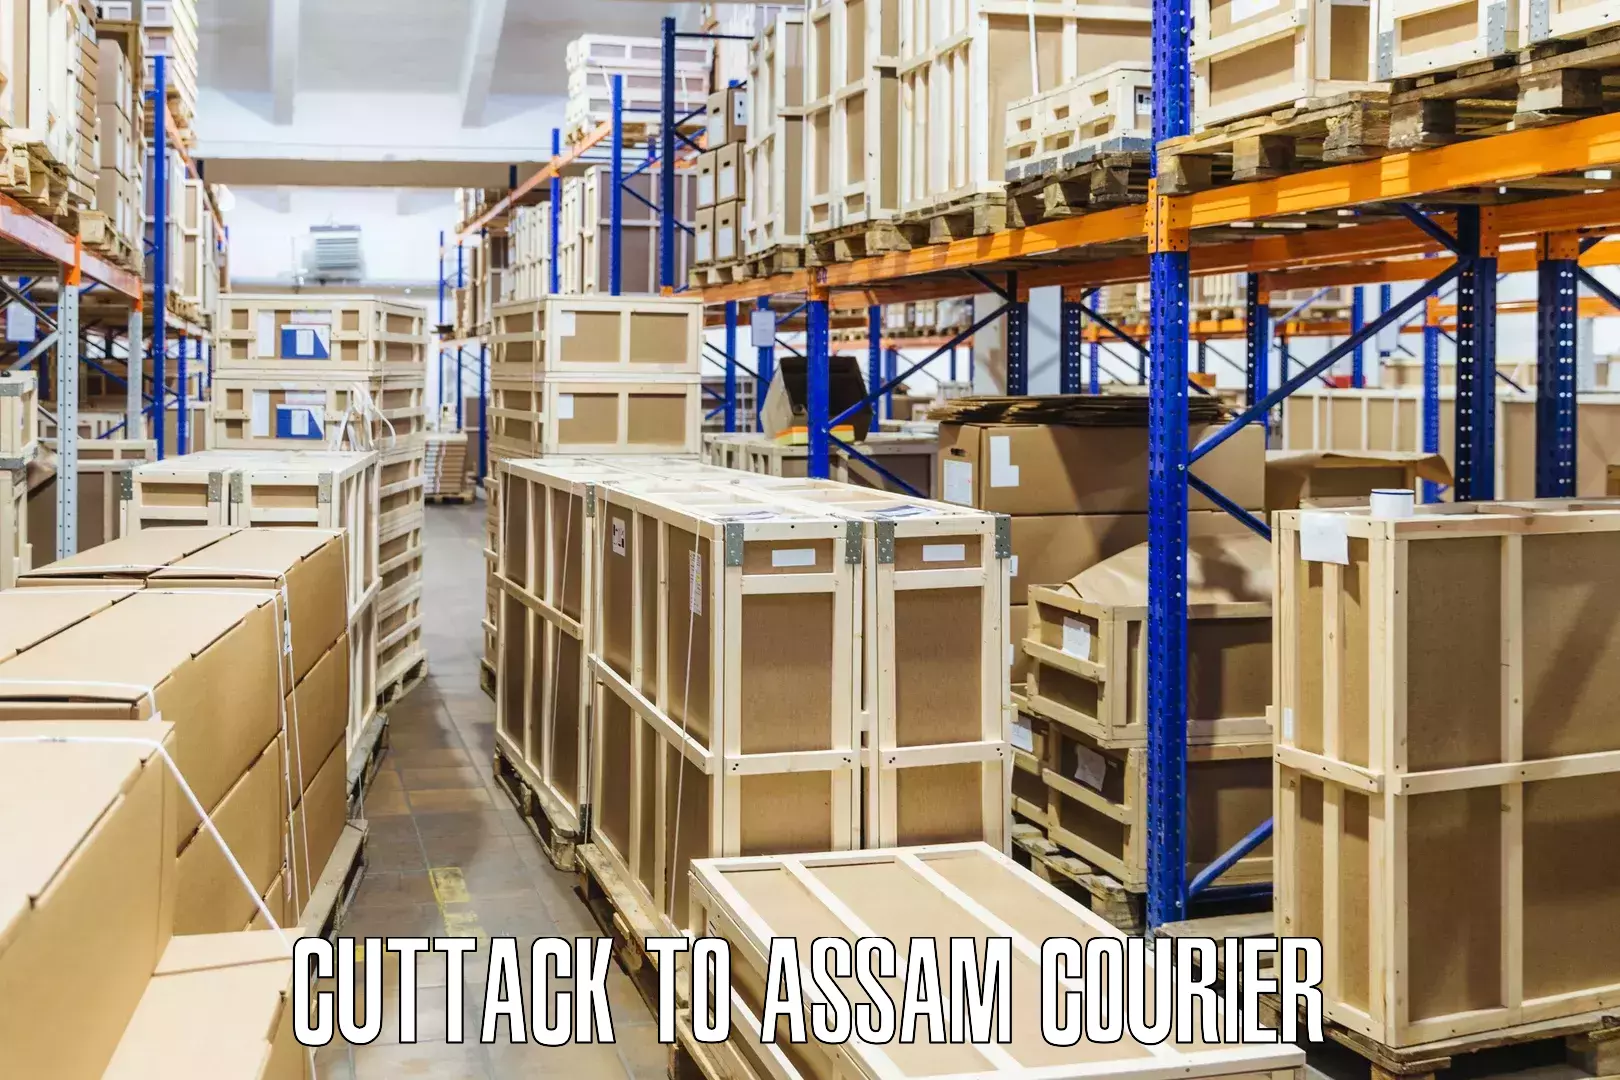 Express logistics providers in Cuttack to Assam